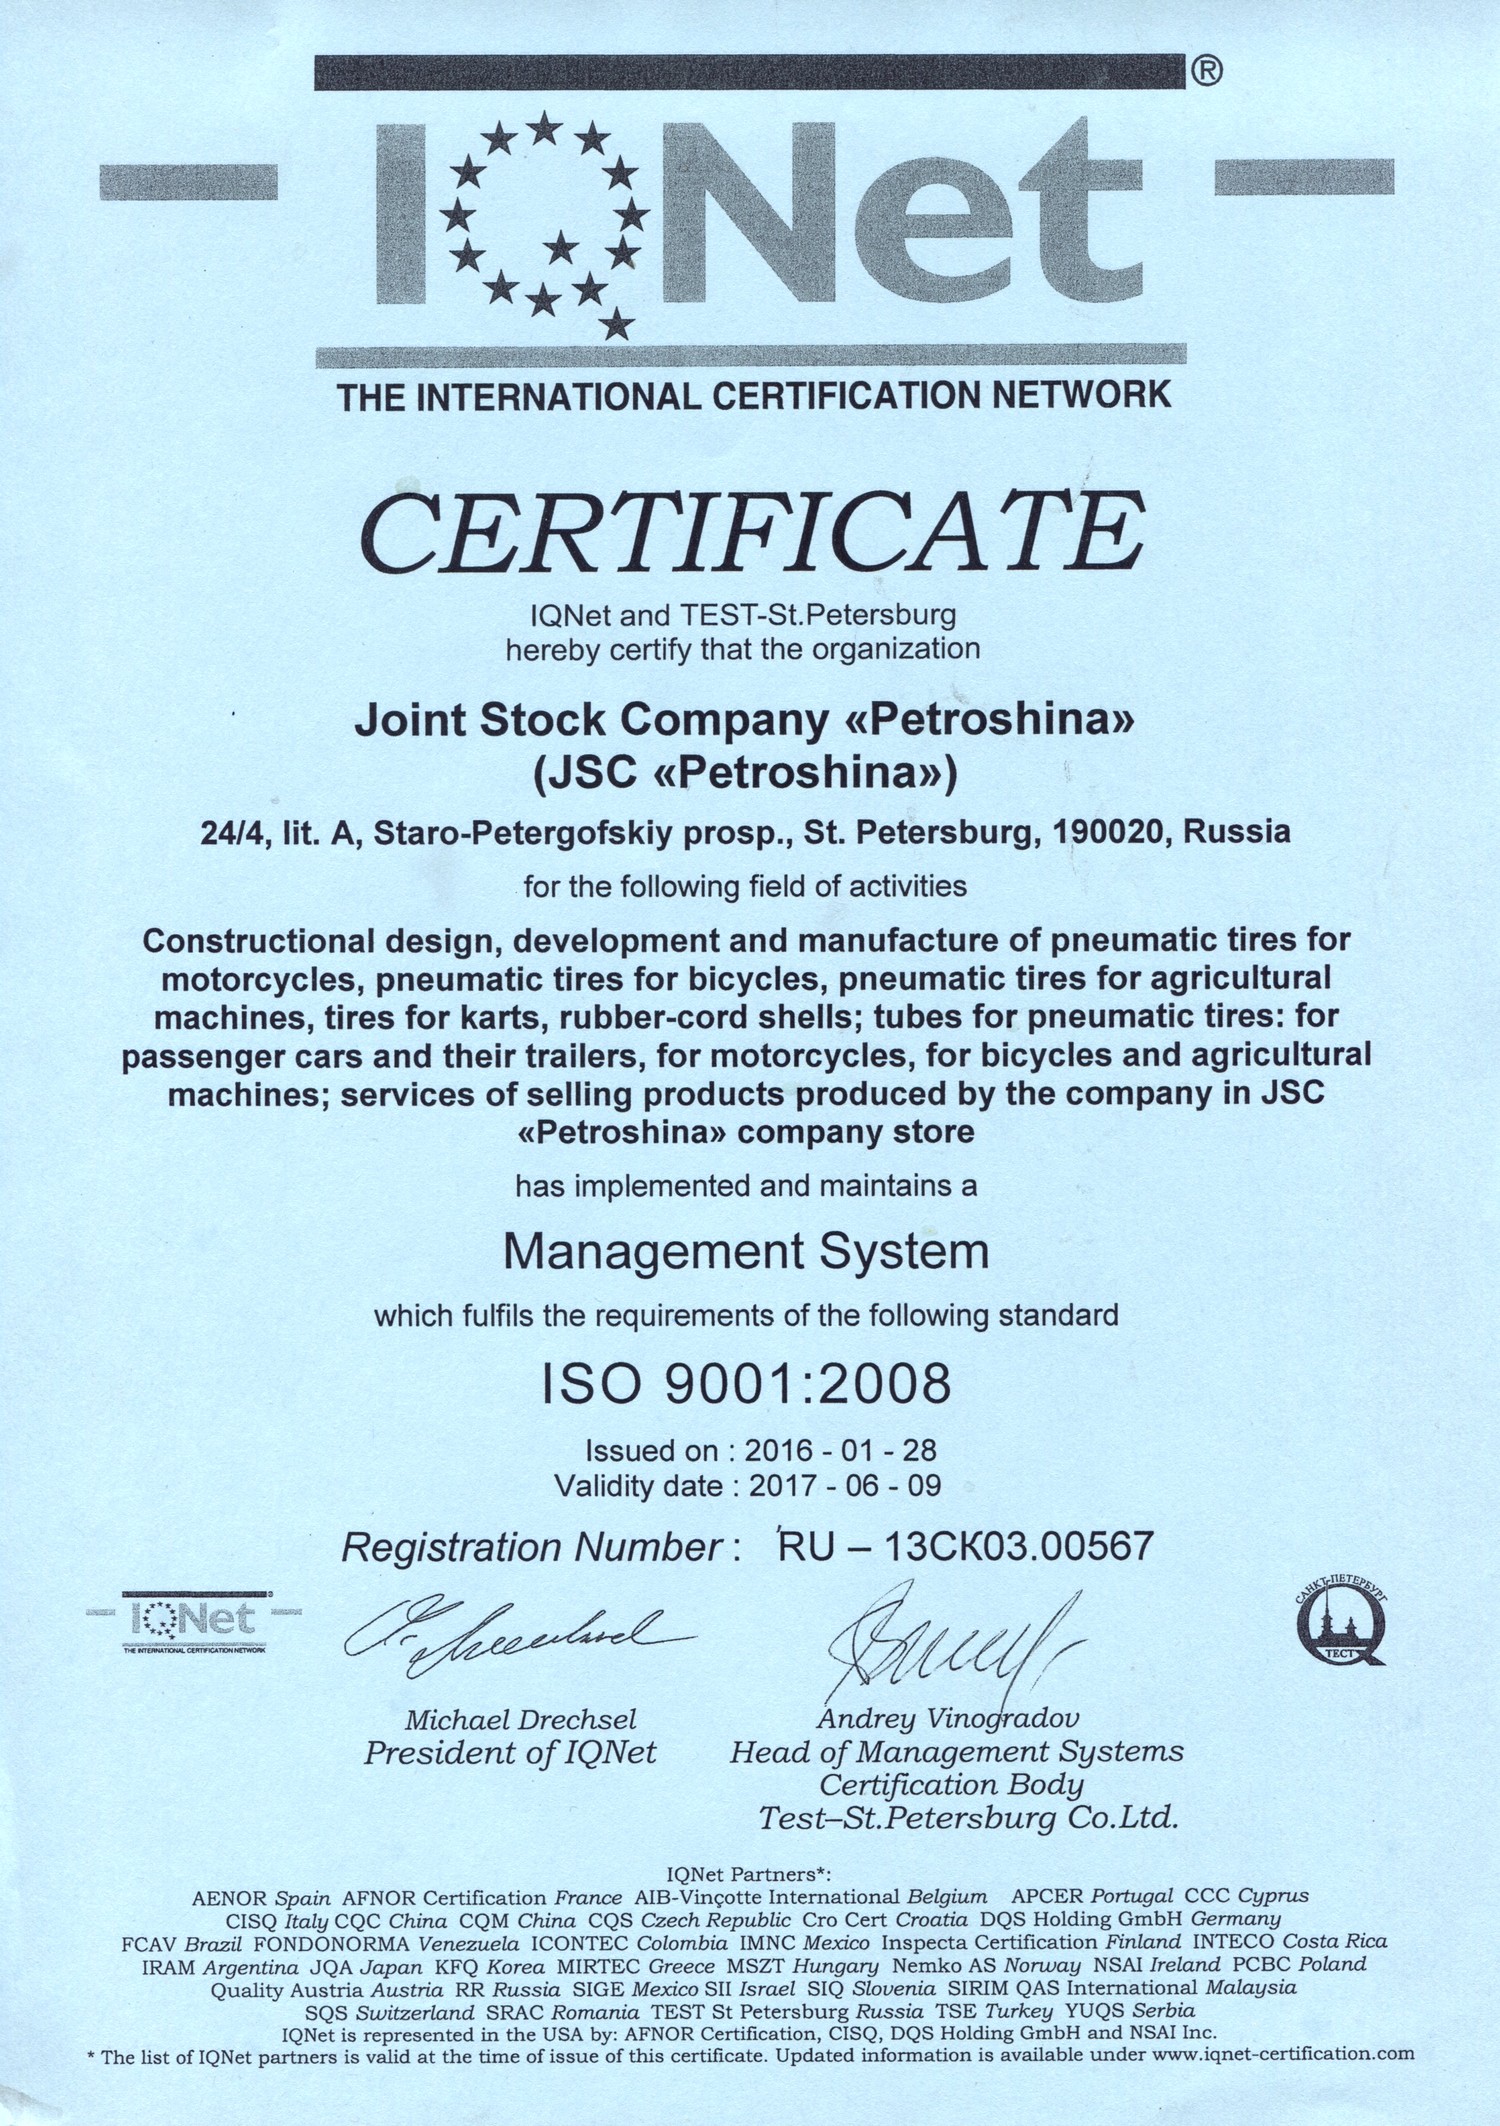 Сертификаты ГОСТ ISO 9001-2011 Петрошина